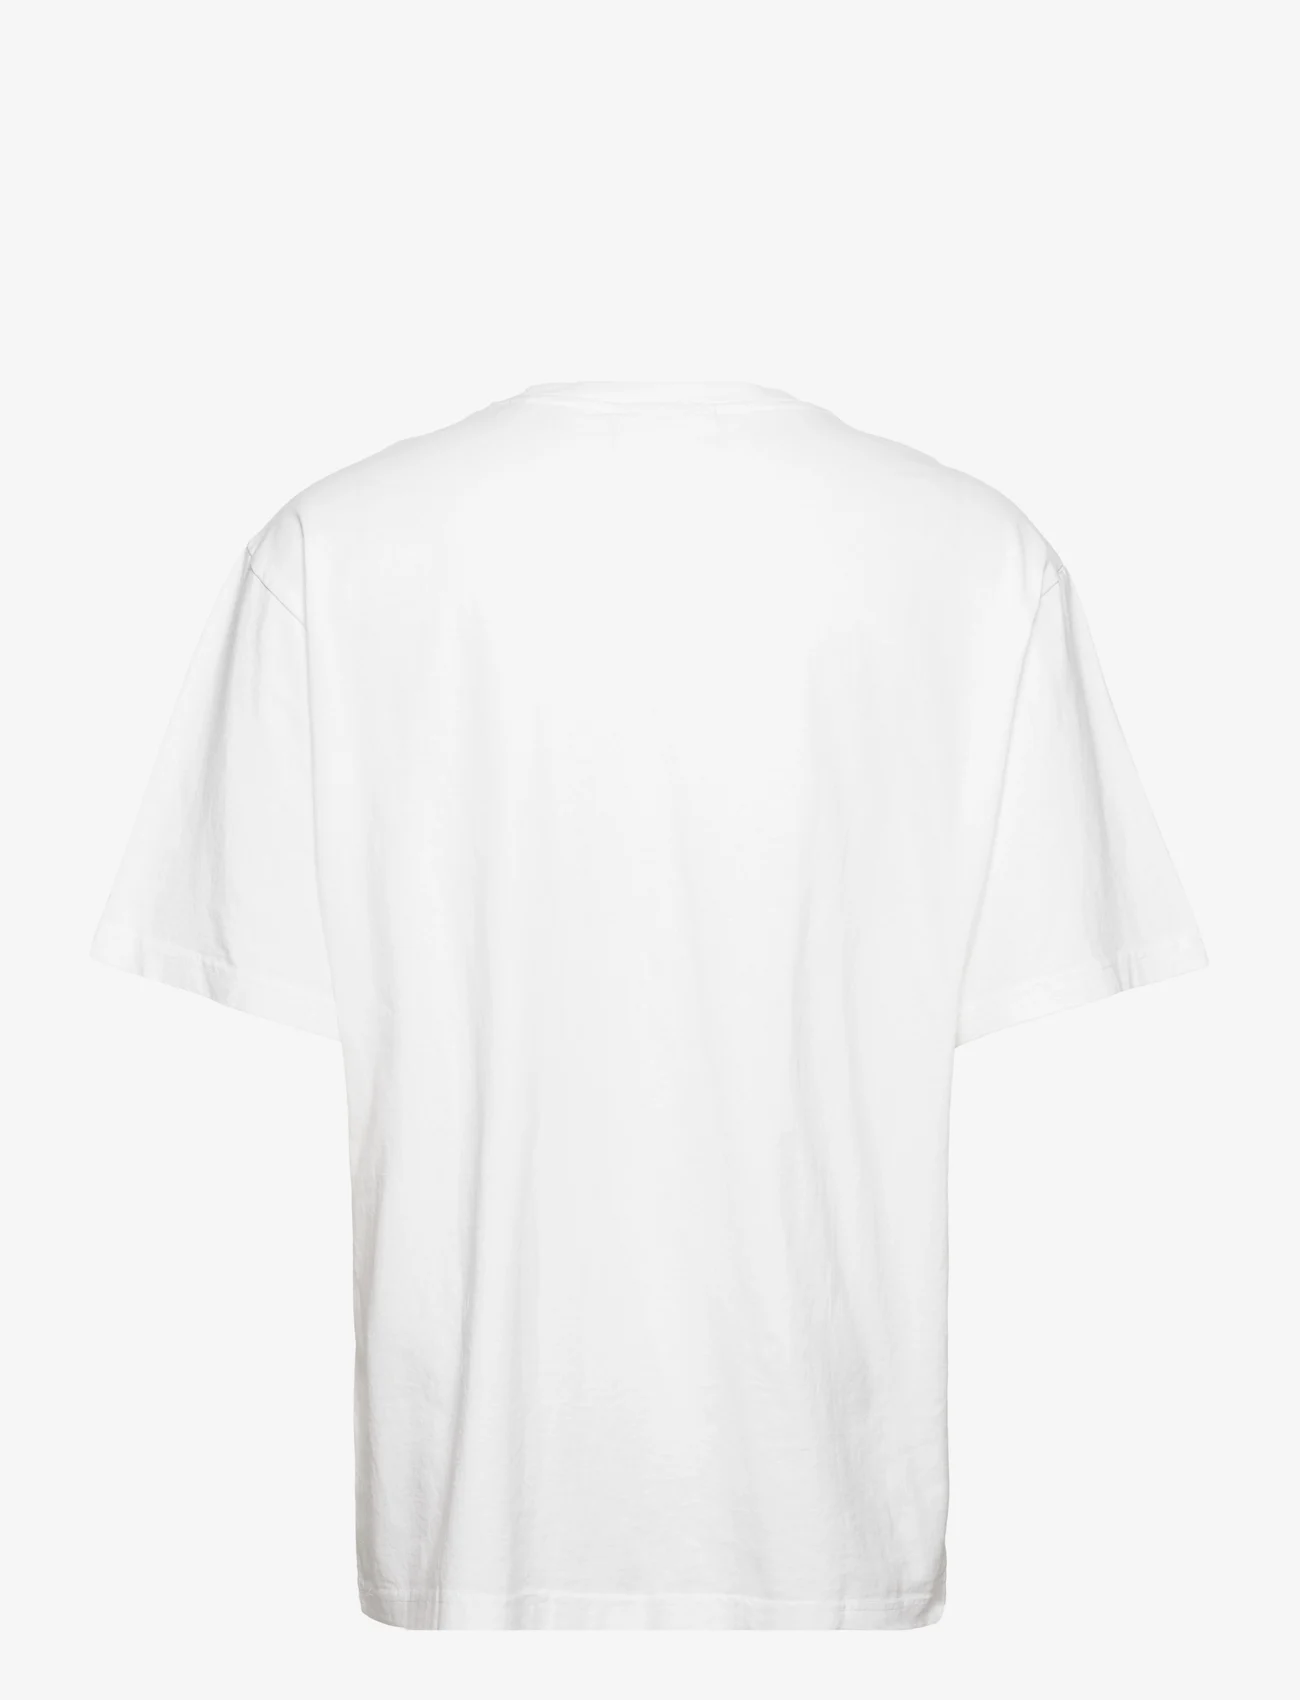 HAN Kjøbenhavn - Boxy Tee Short Sleeve - laisvalaikio marškinėliai - white - 1